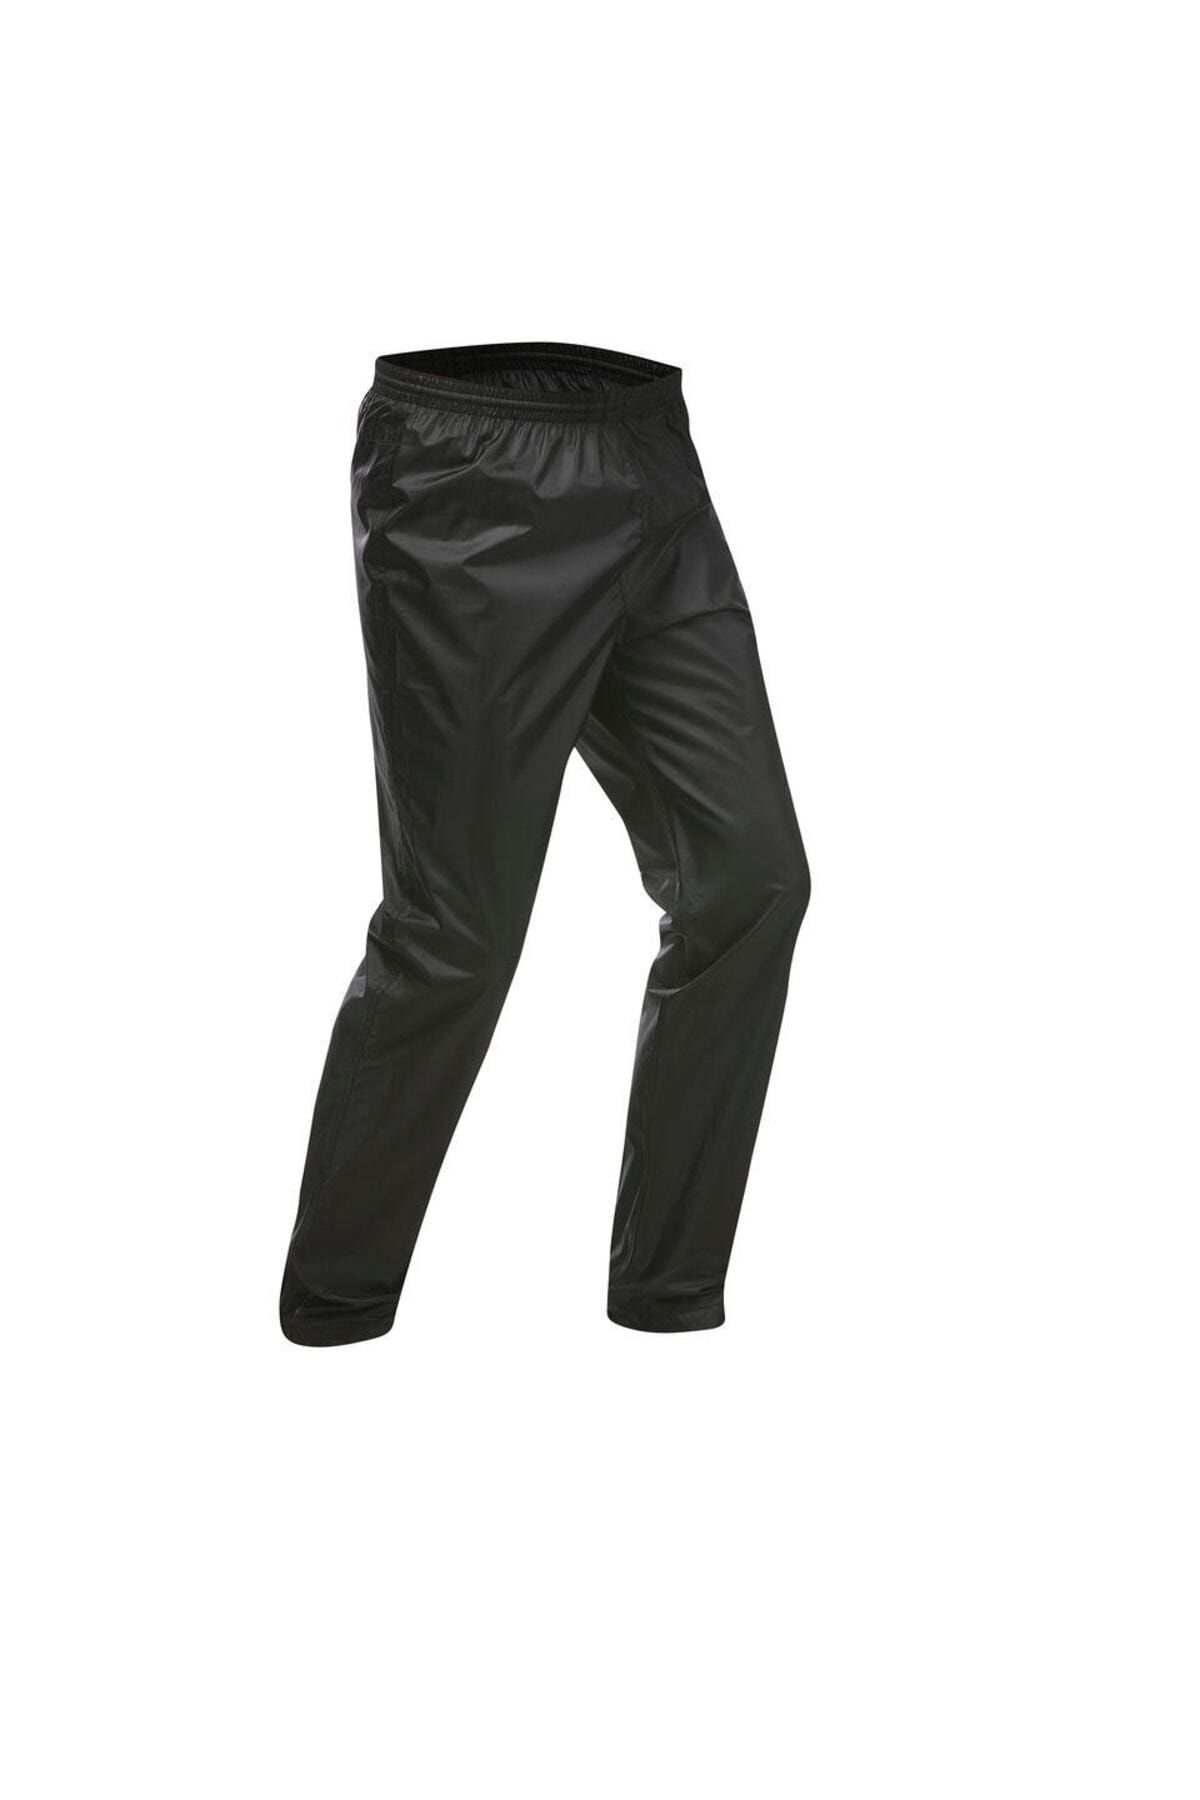 Decathlon Erkek Su Geçirmez Pantolon Yağmurluk Nh500 Siyah